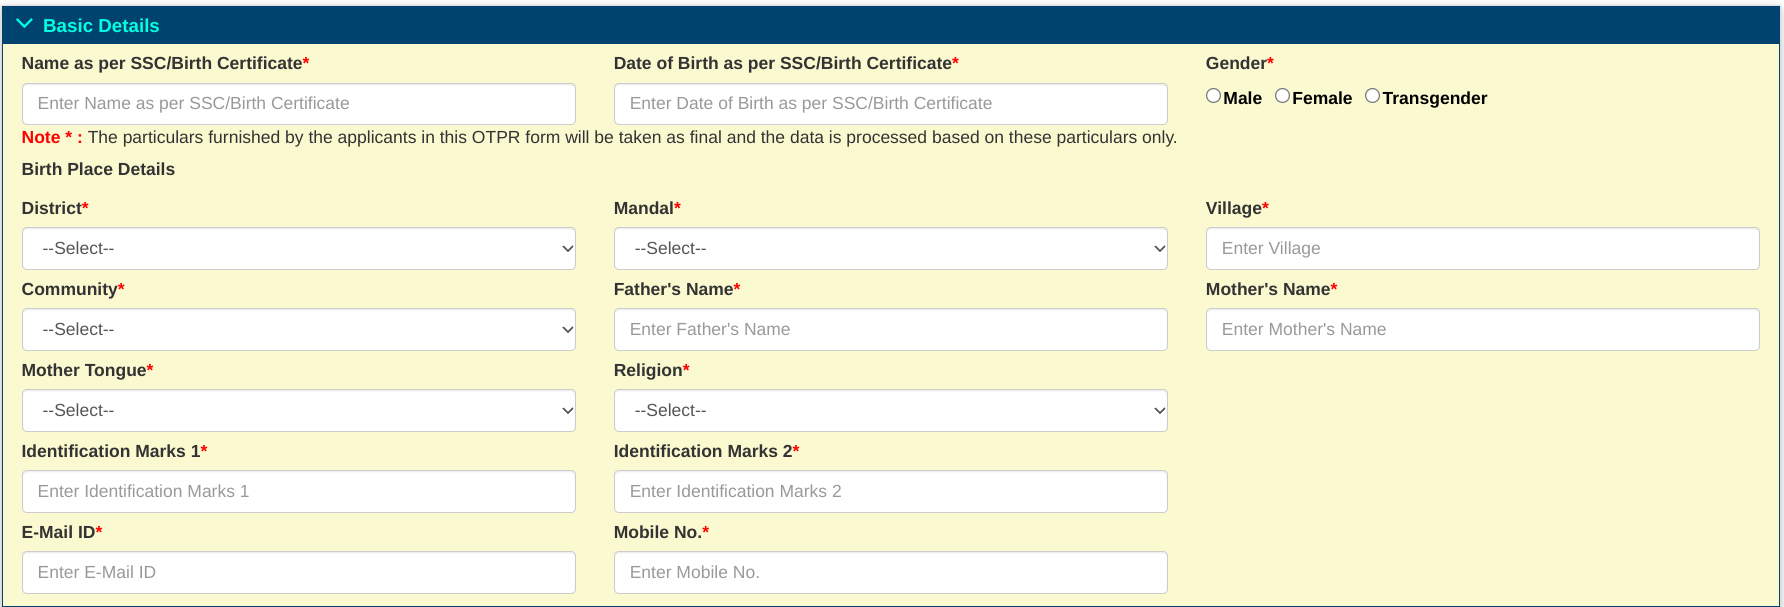 APPSC Group 2 Registration Form